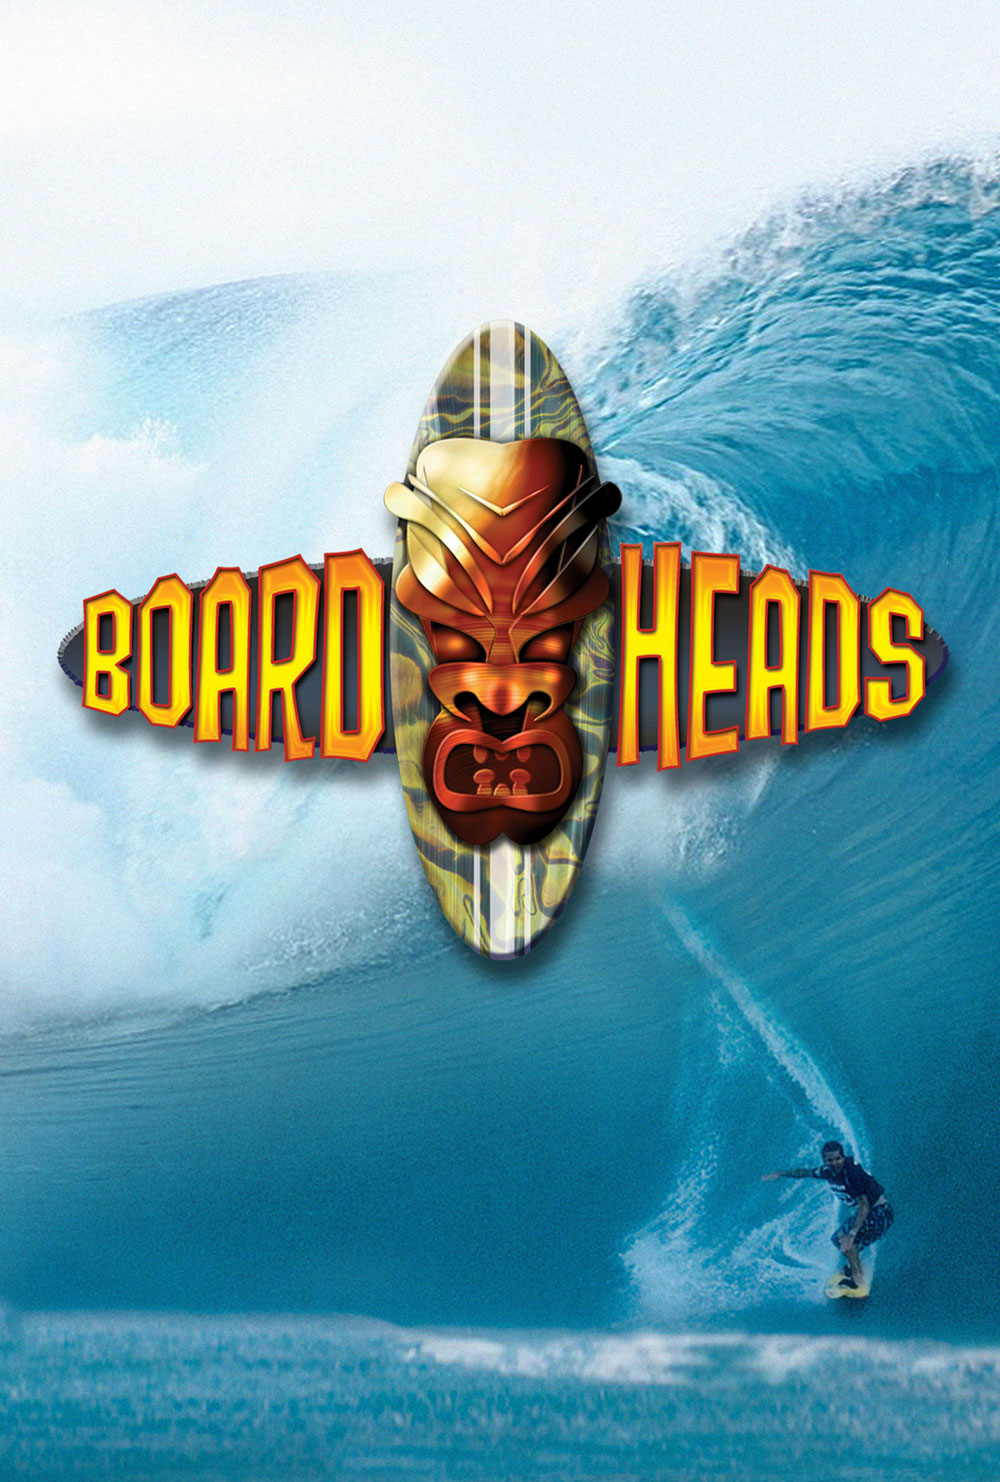 BoardHeads